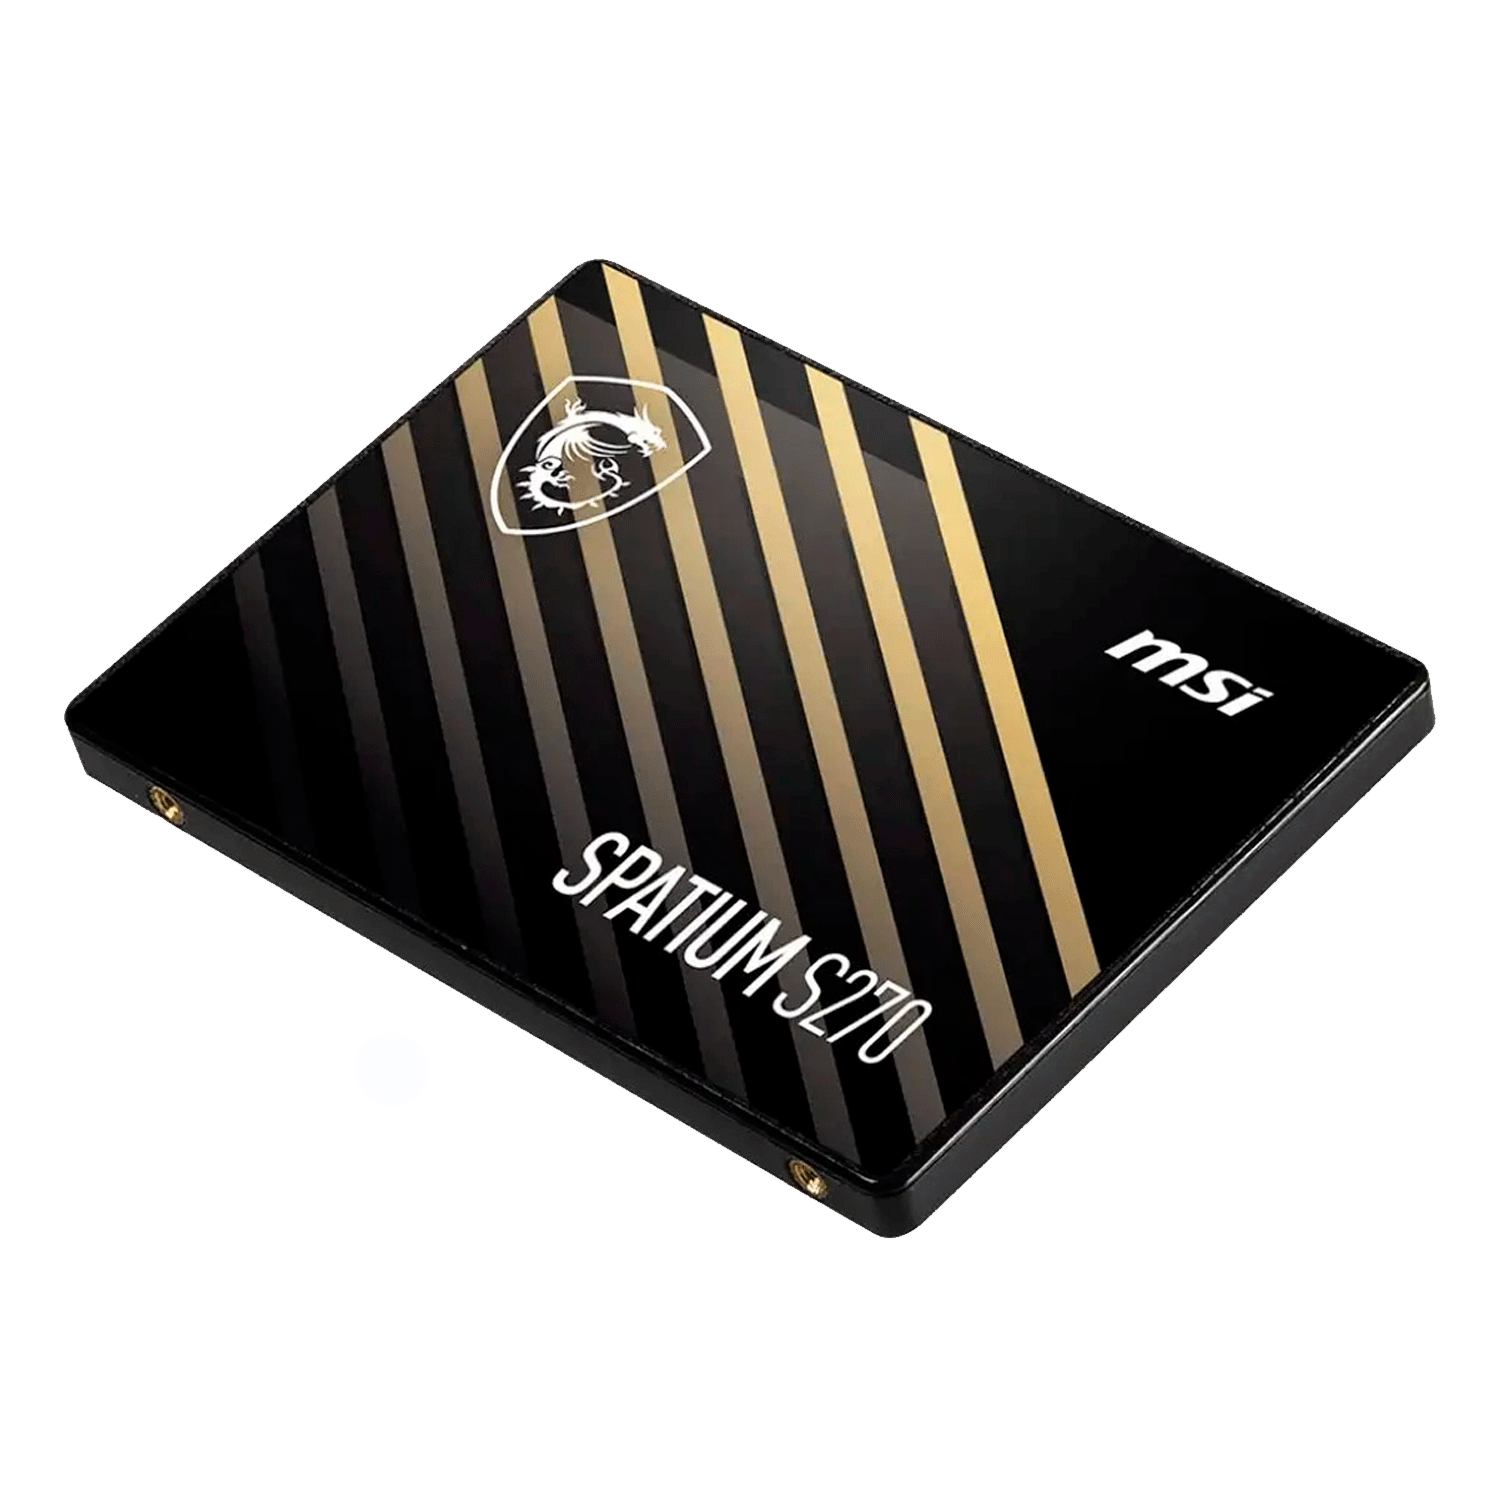 SSD MSI Spatium S270 480GB / 2.5" / SATA3